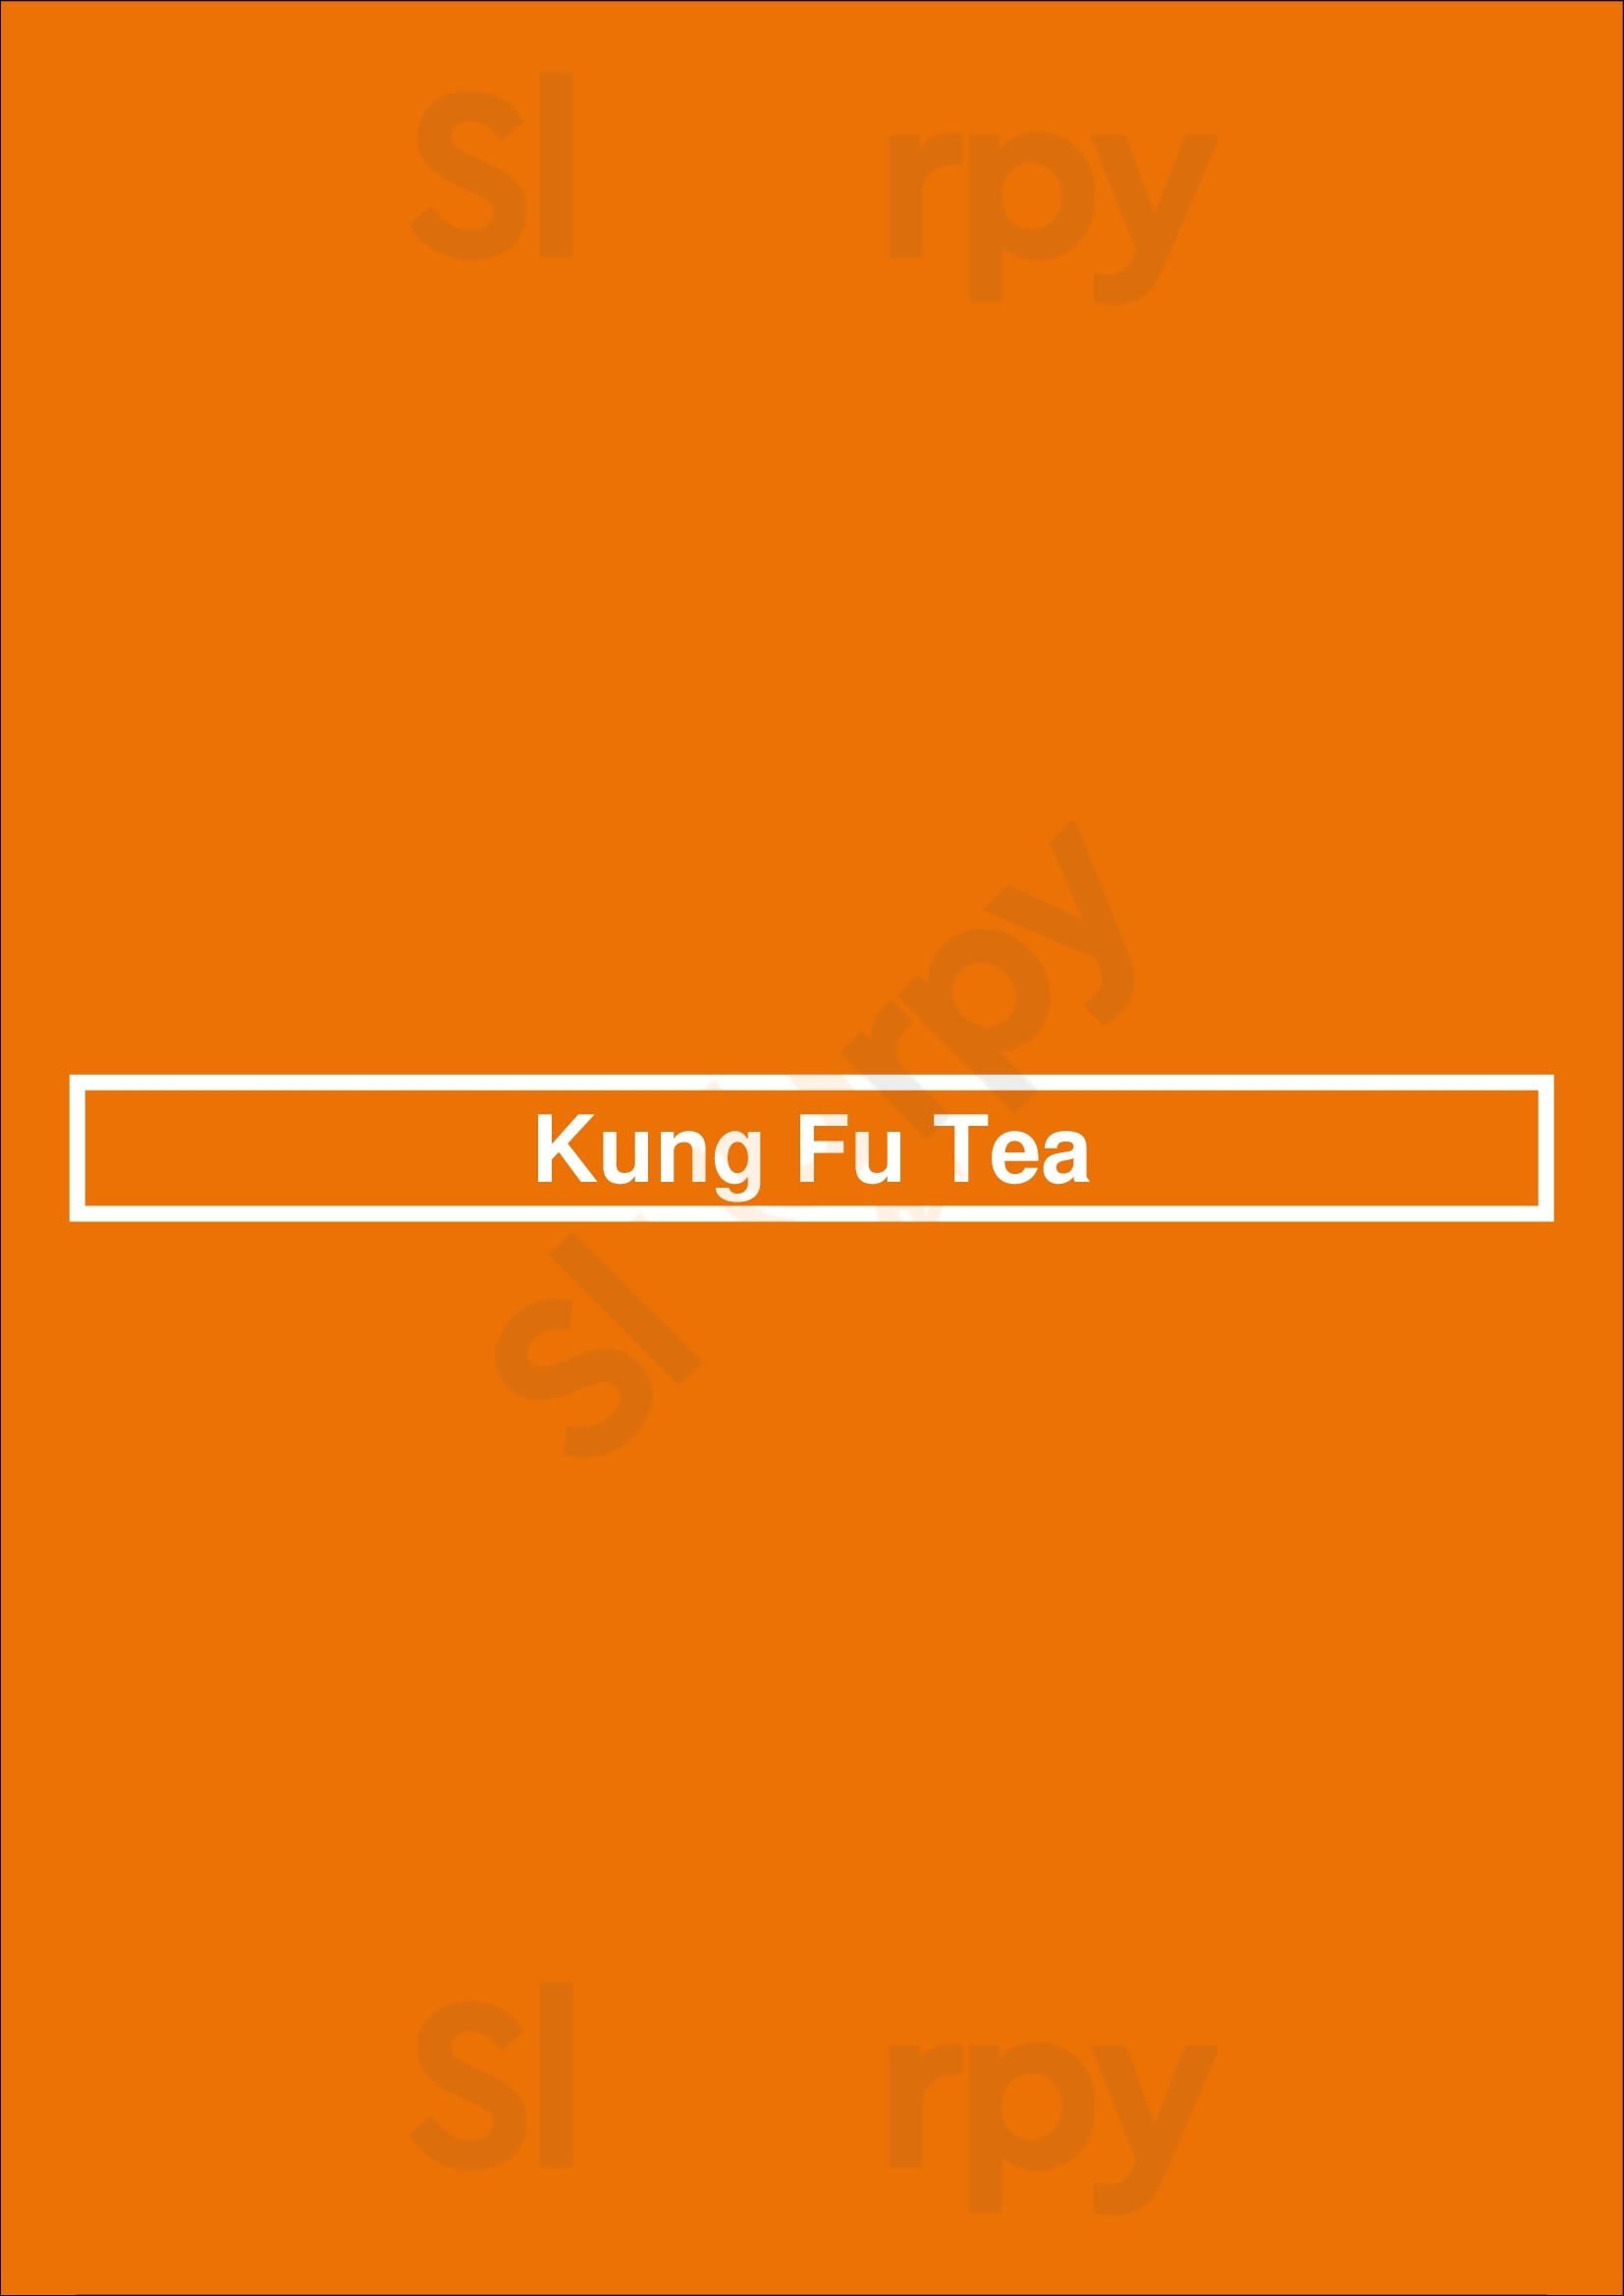 Kung Fu Tea Washington DC Menu - 1